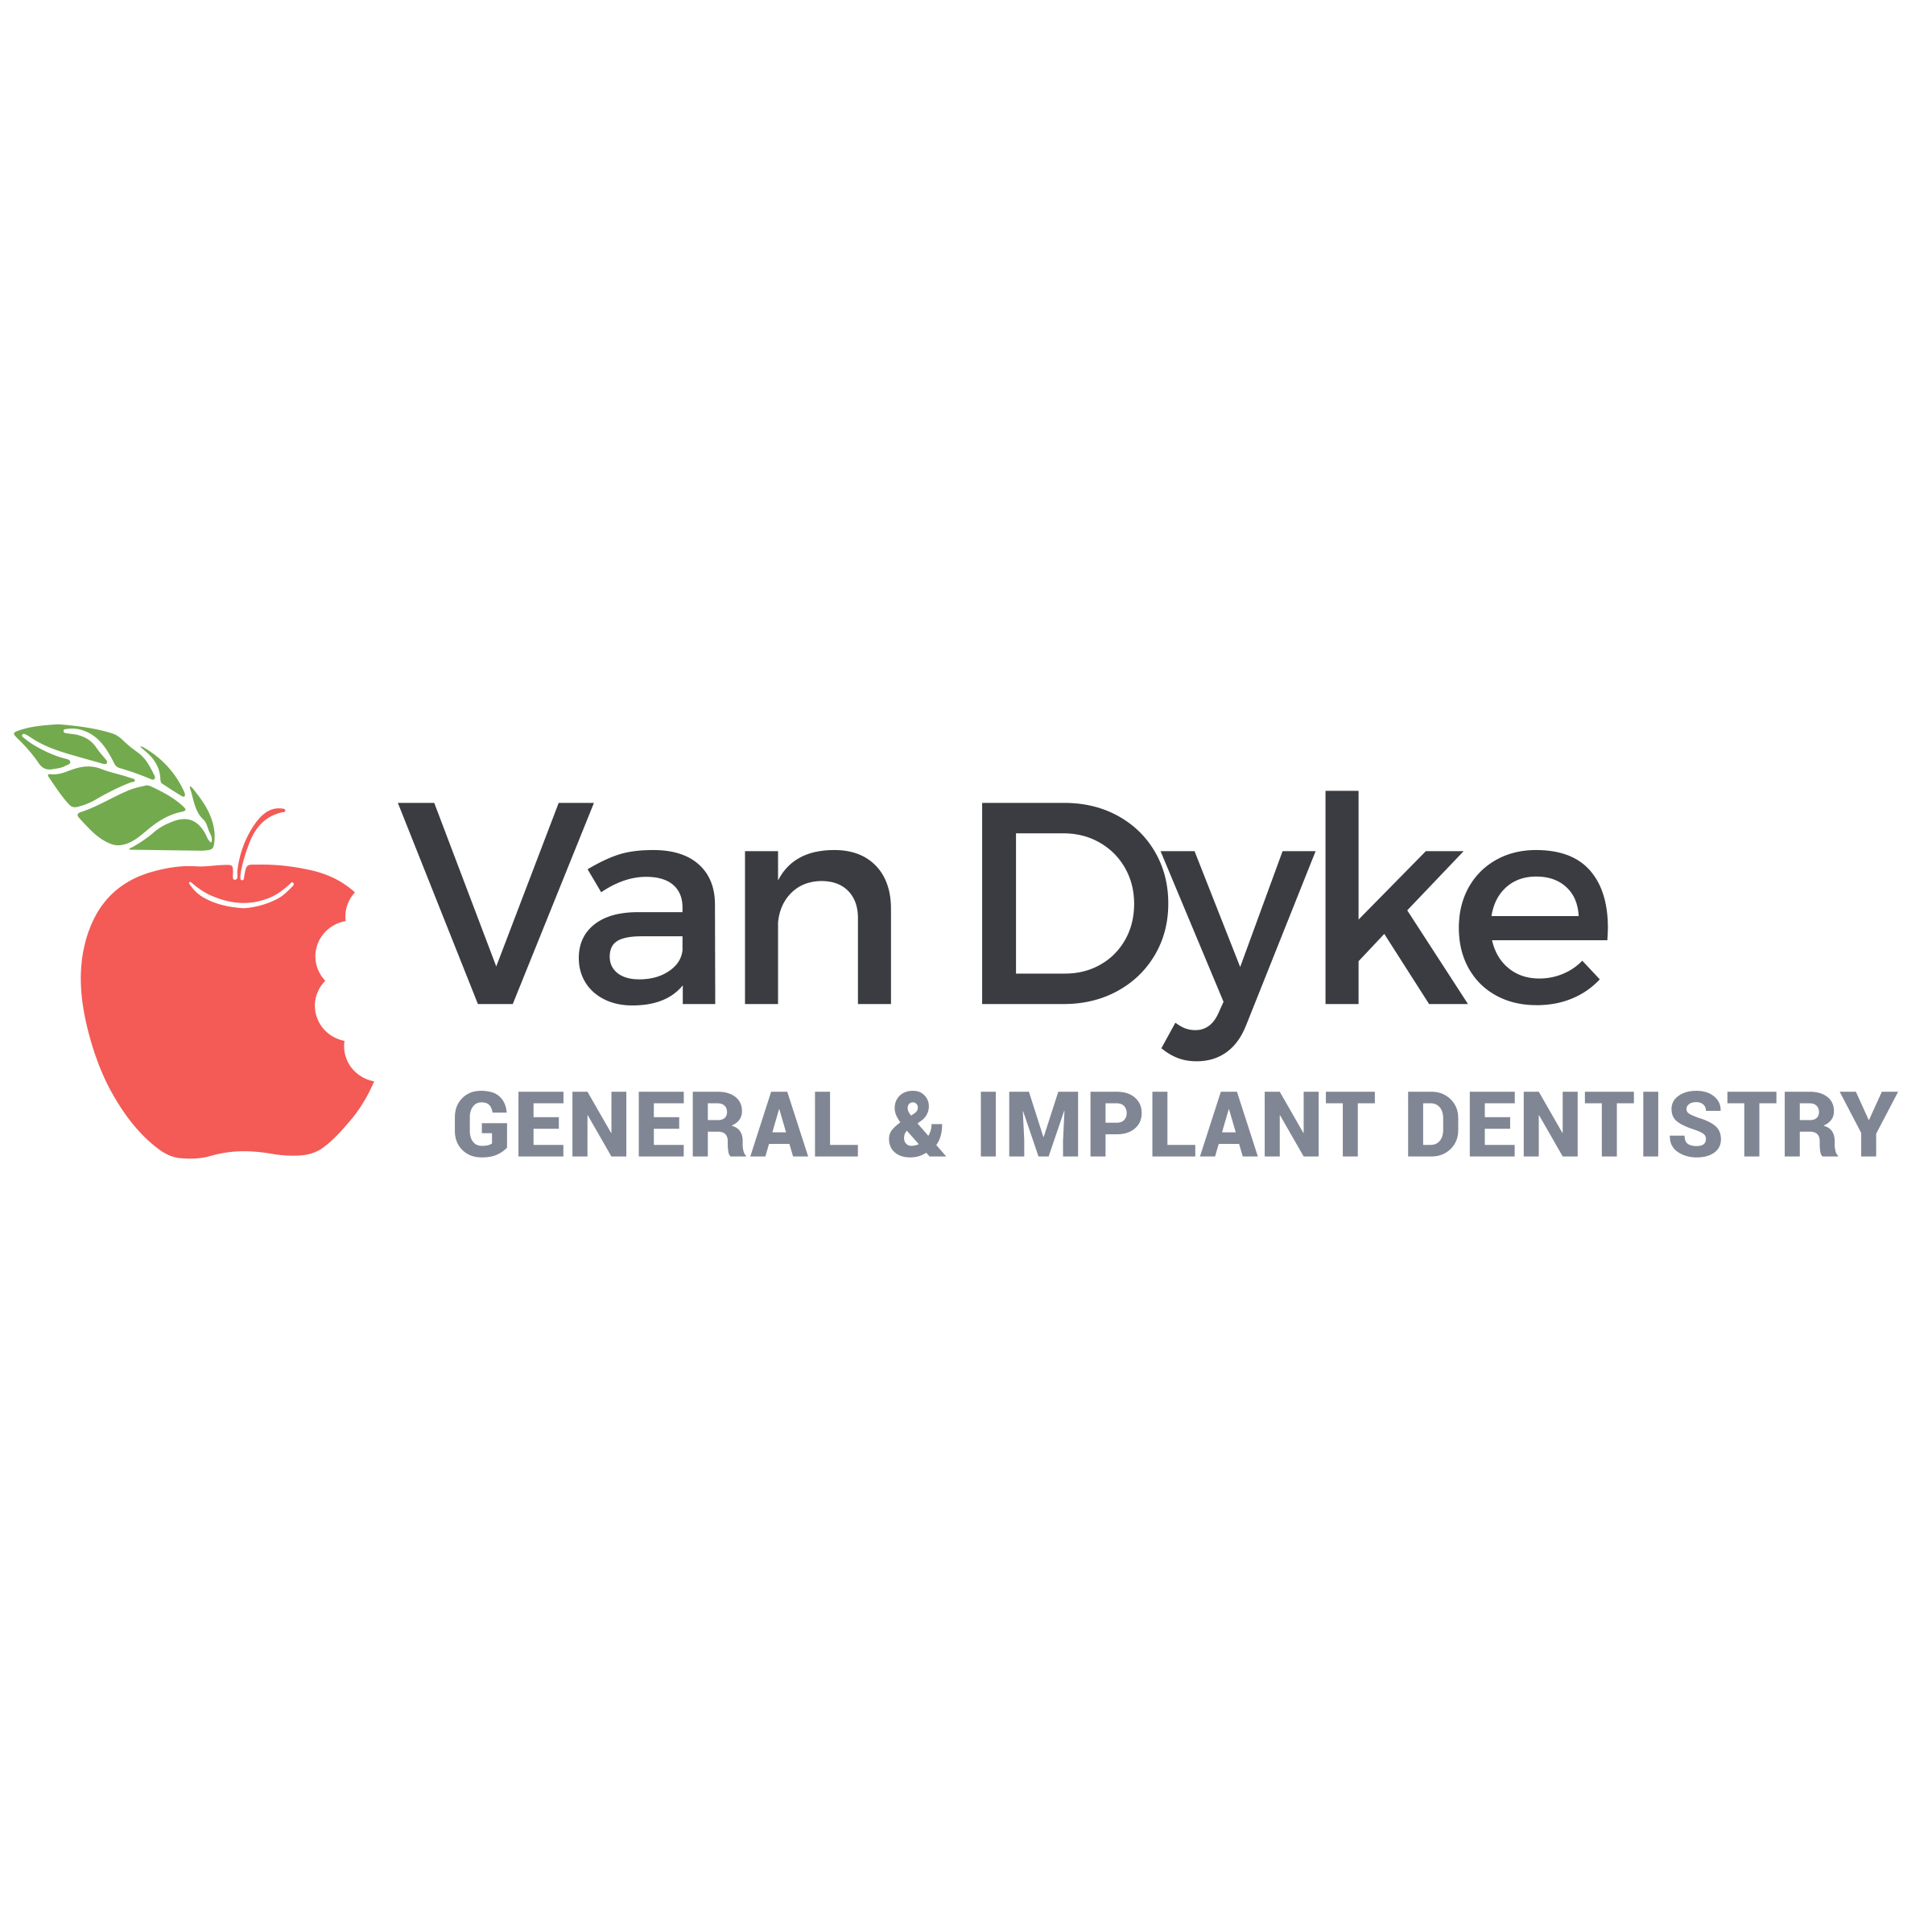 Van Dyke General & Implant Dentistry Logo